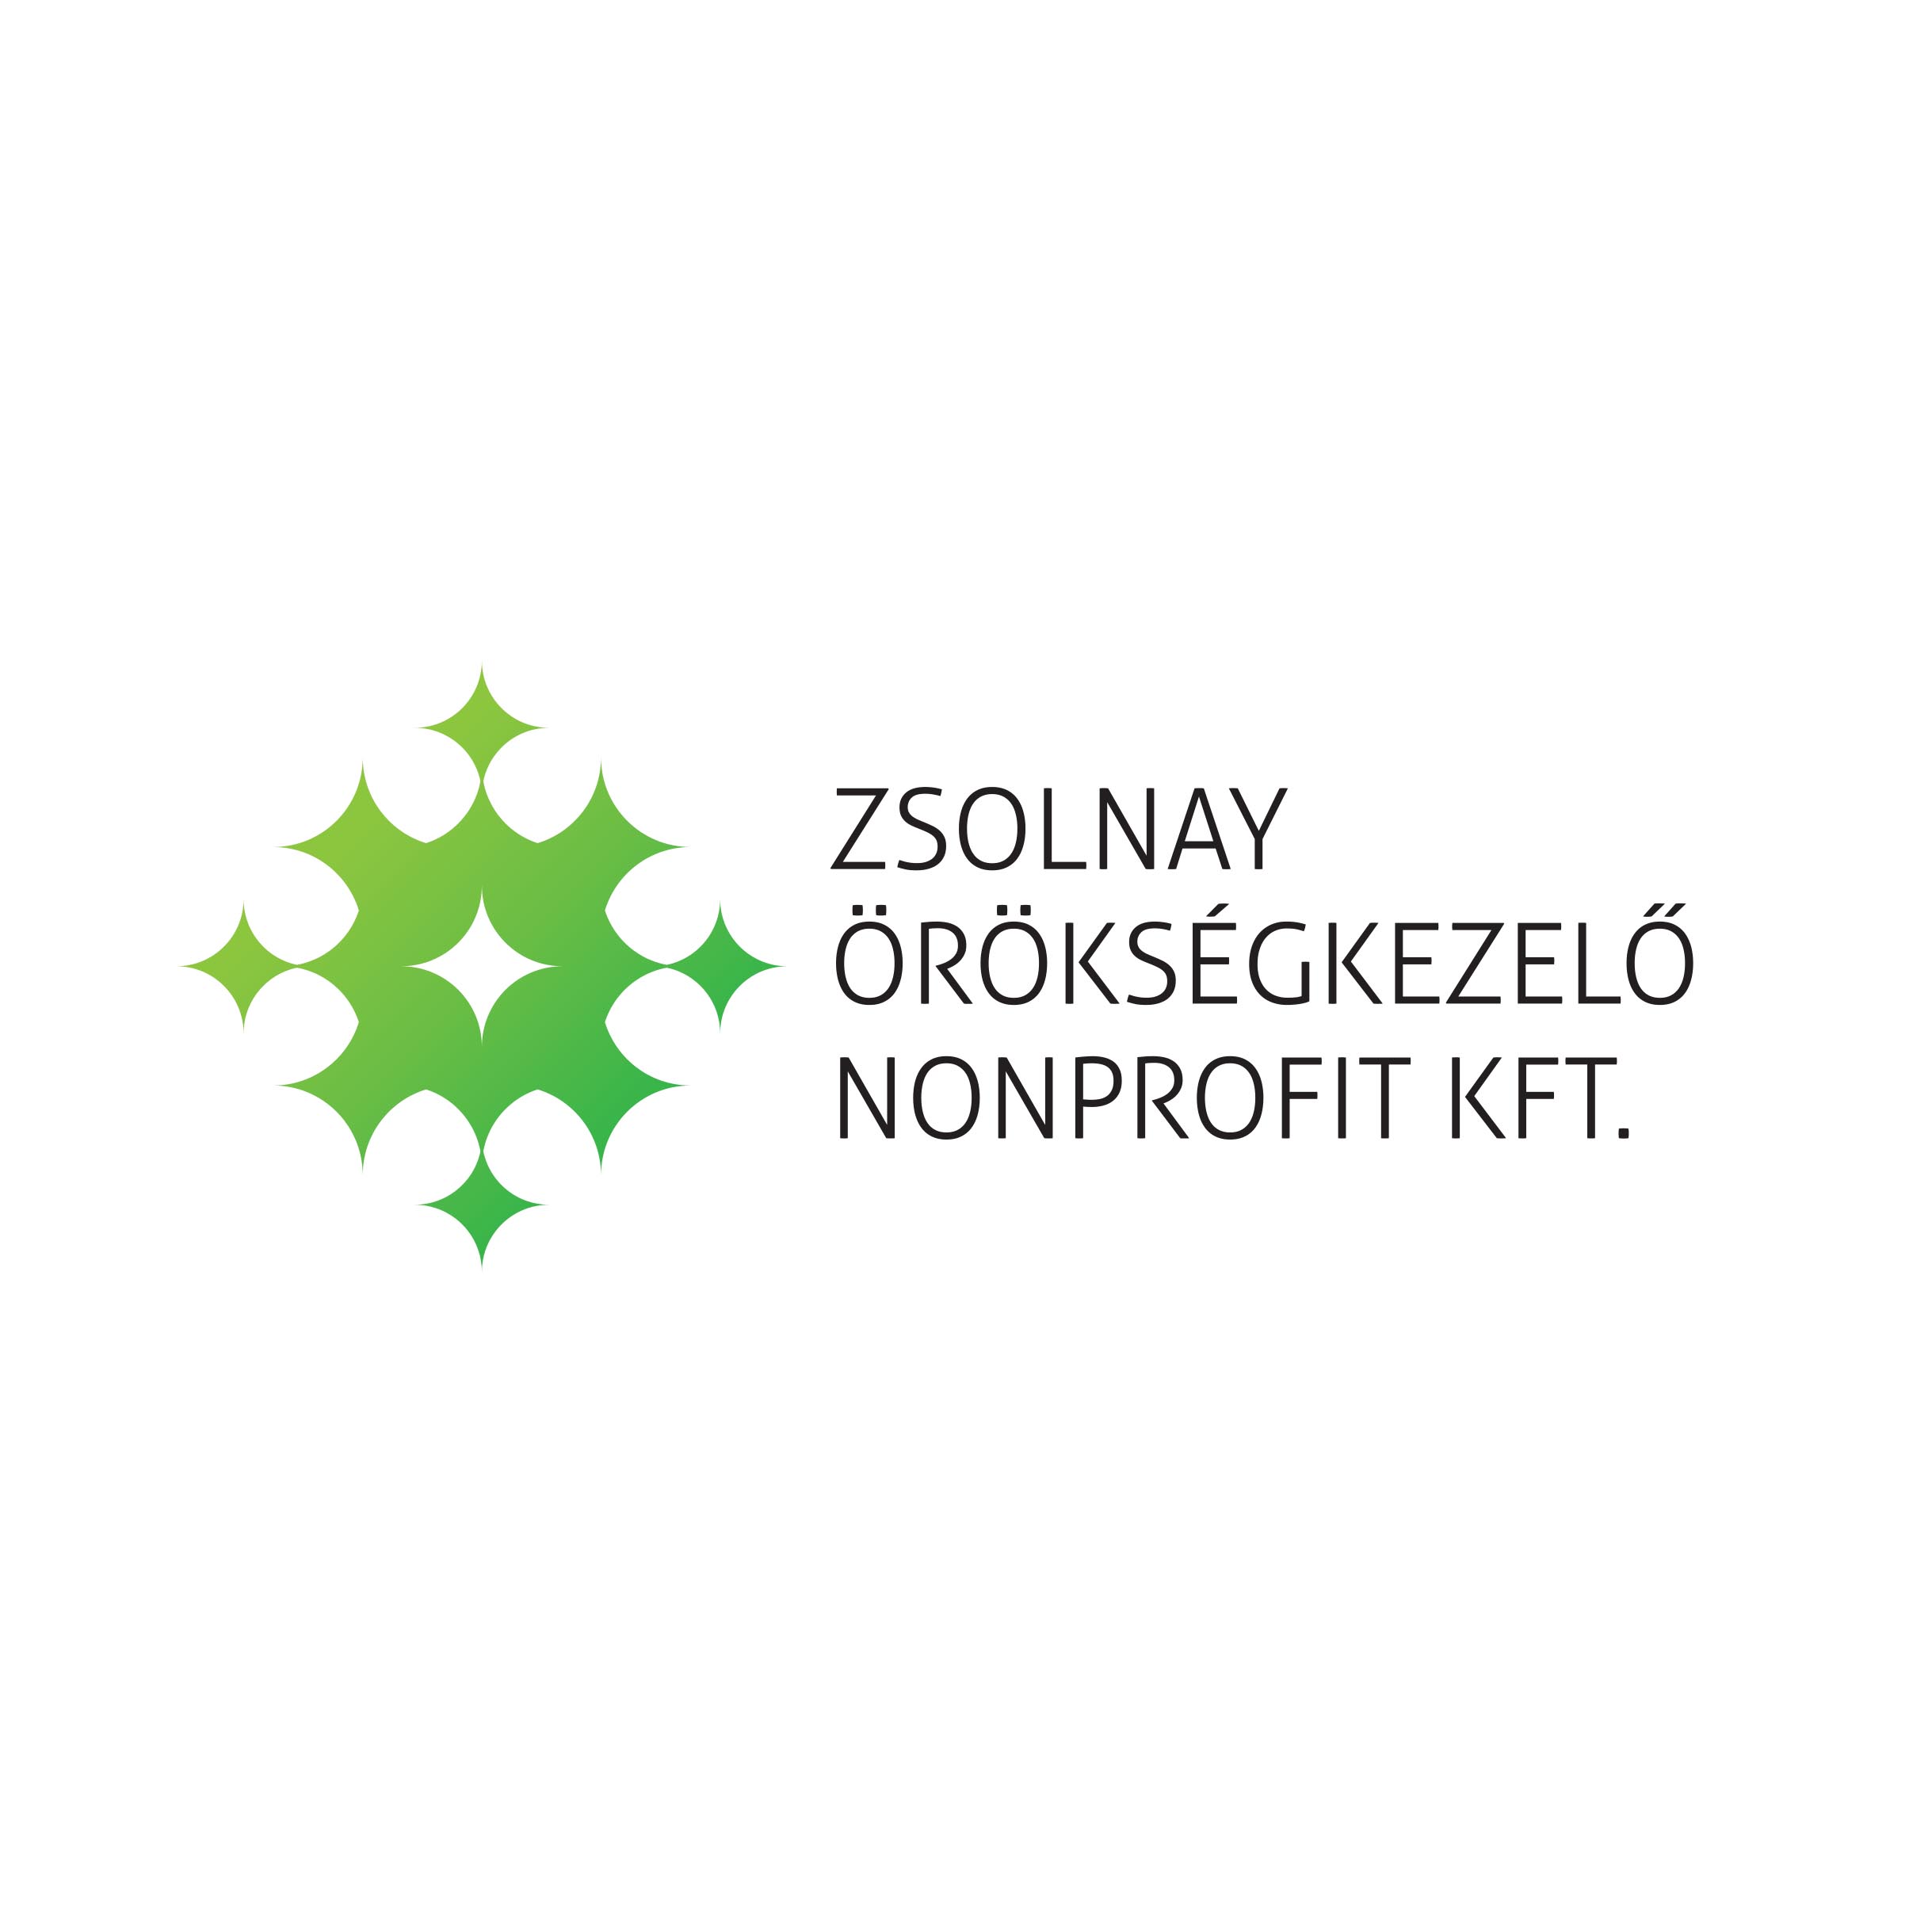 Zsolnay Örökségkezelő Nonprofit Kft.